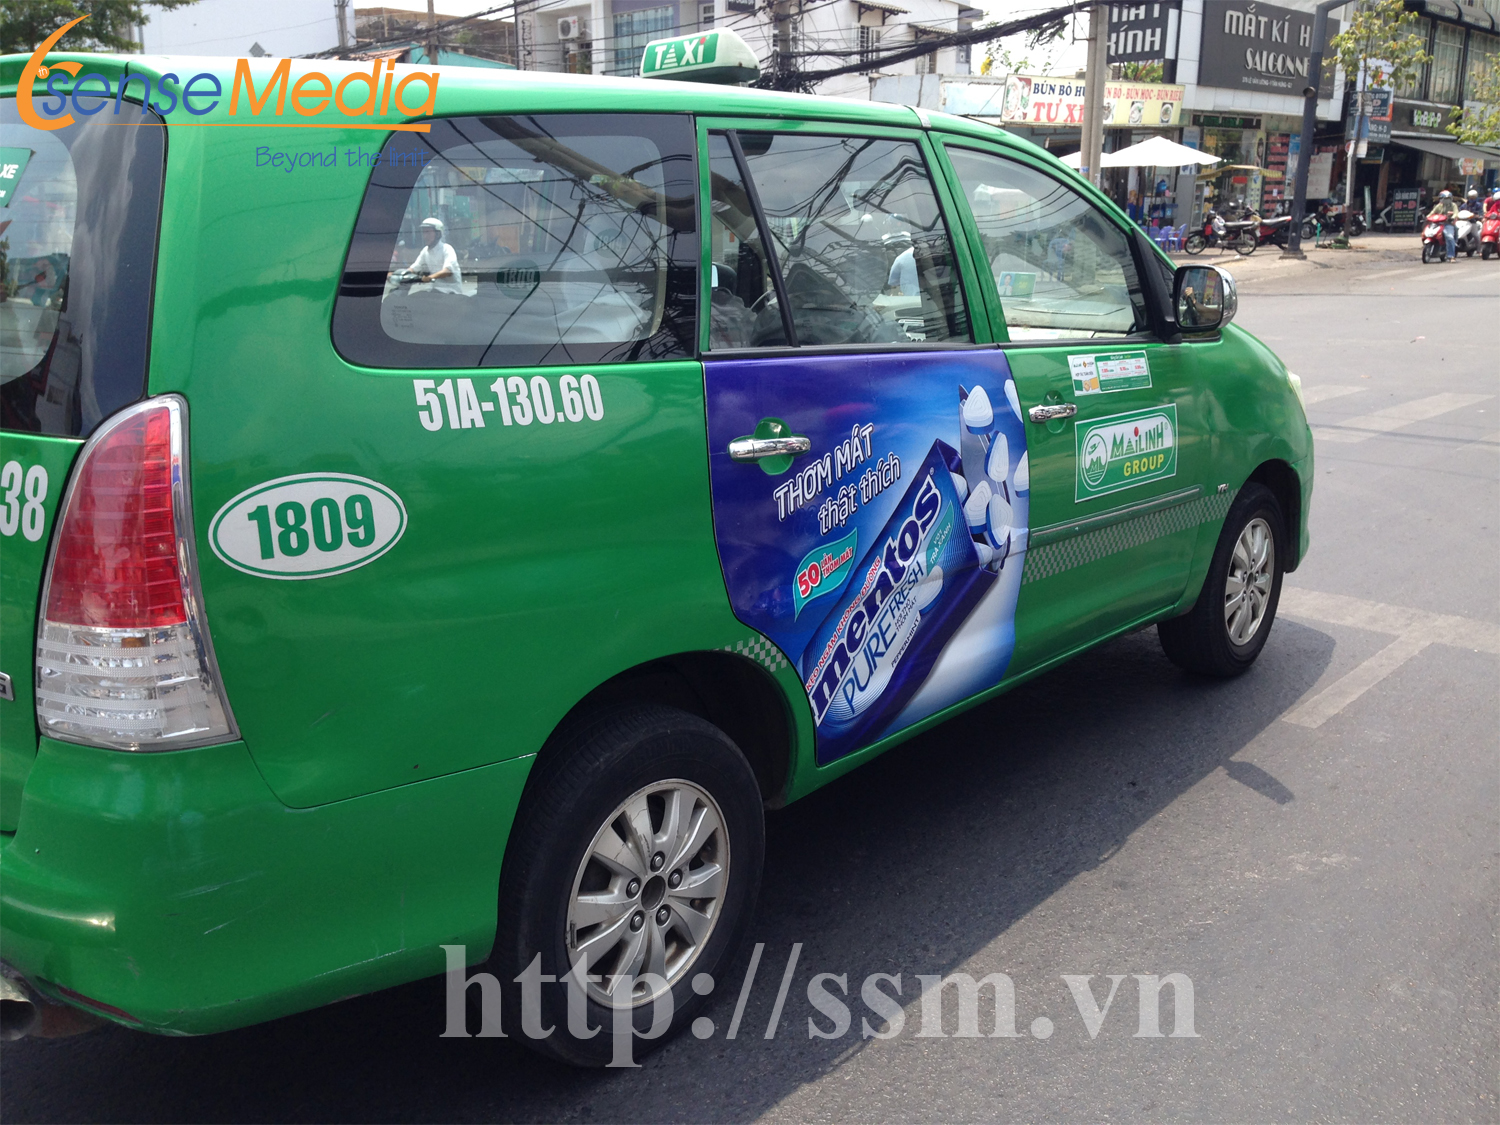 Quảng cáo Taxi Mai Linh toàn quốc